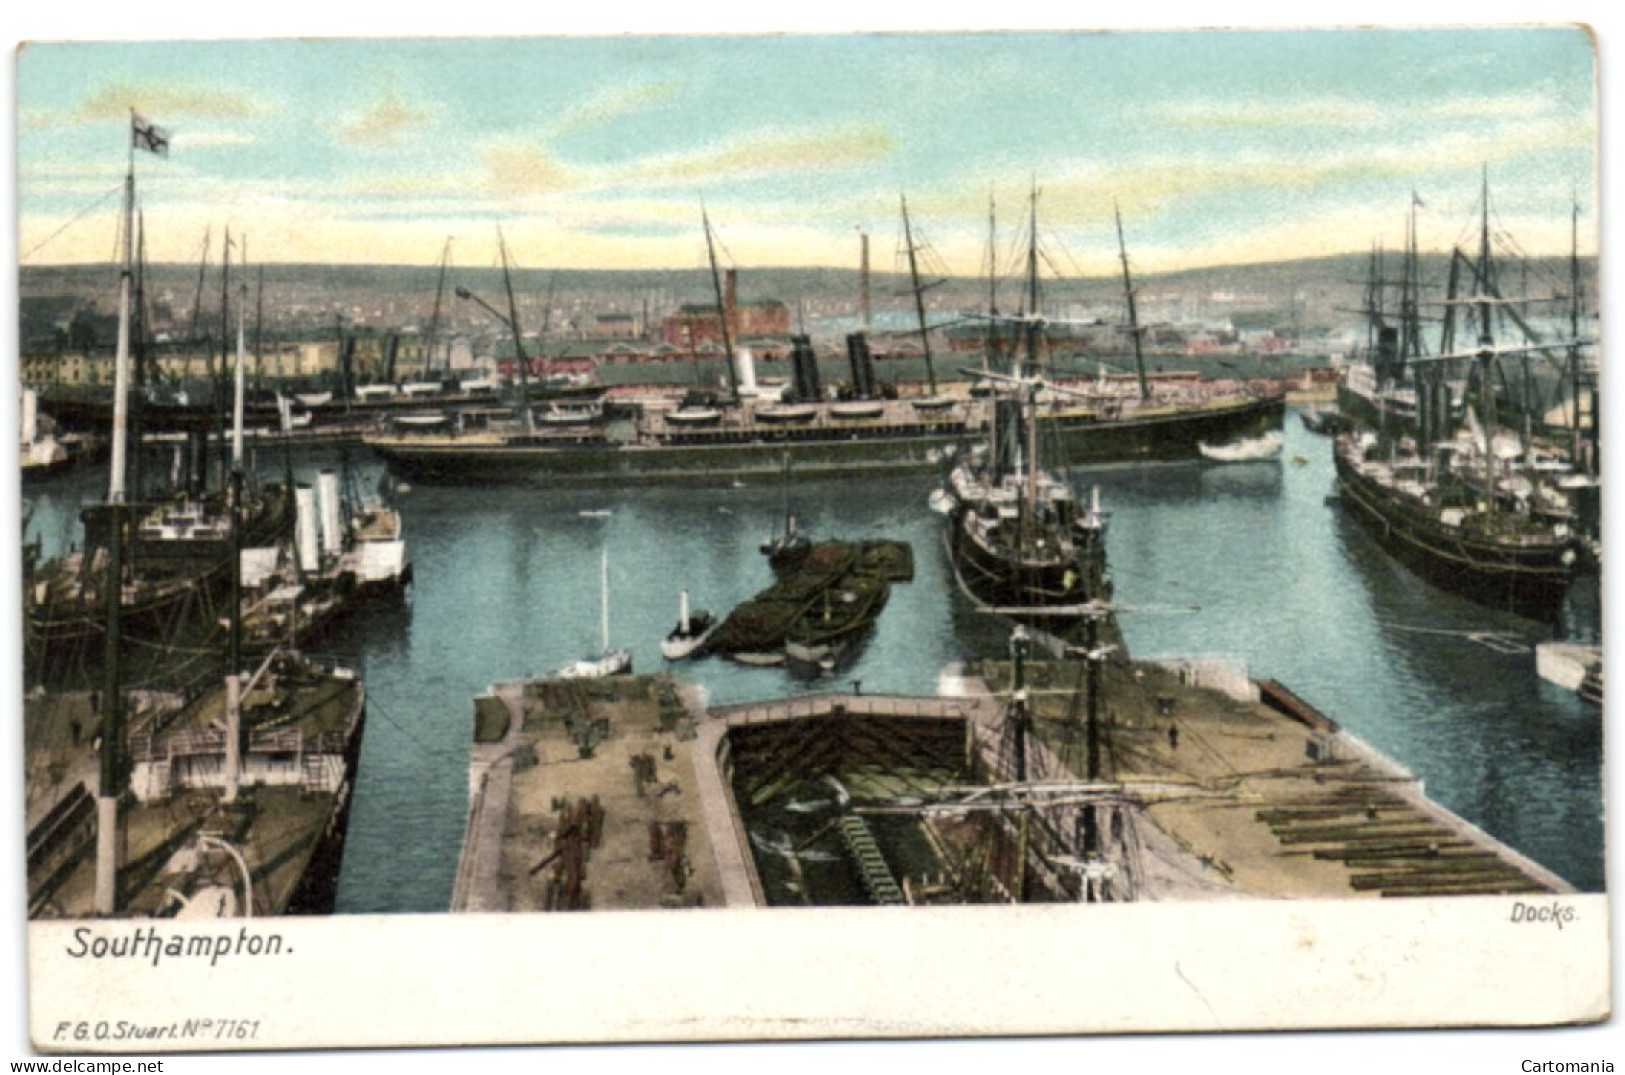 Southampton - Docks - Southampton